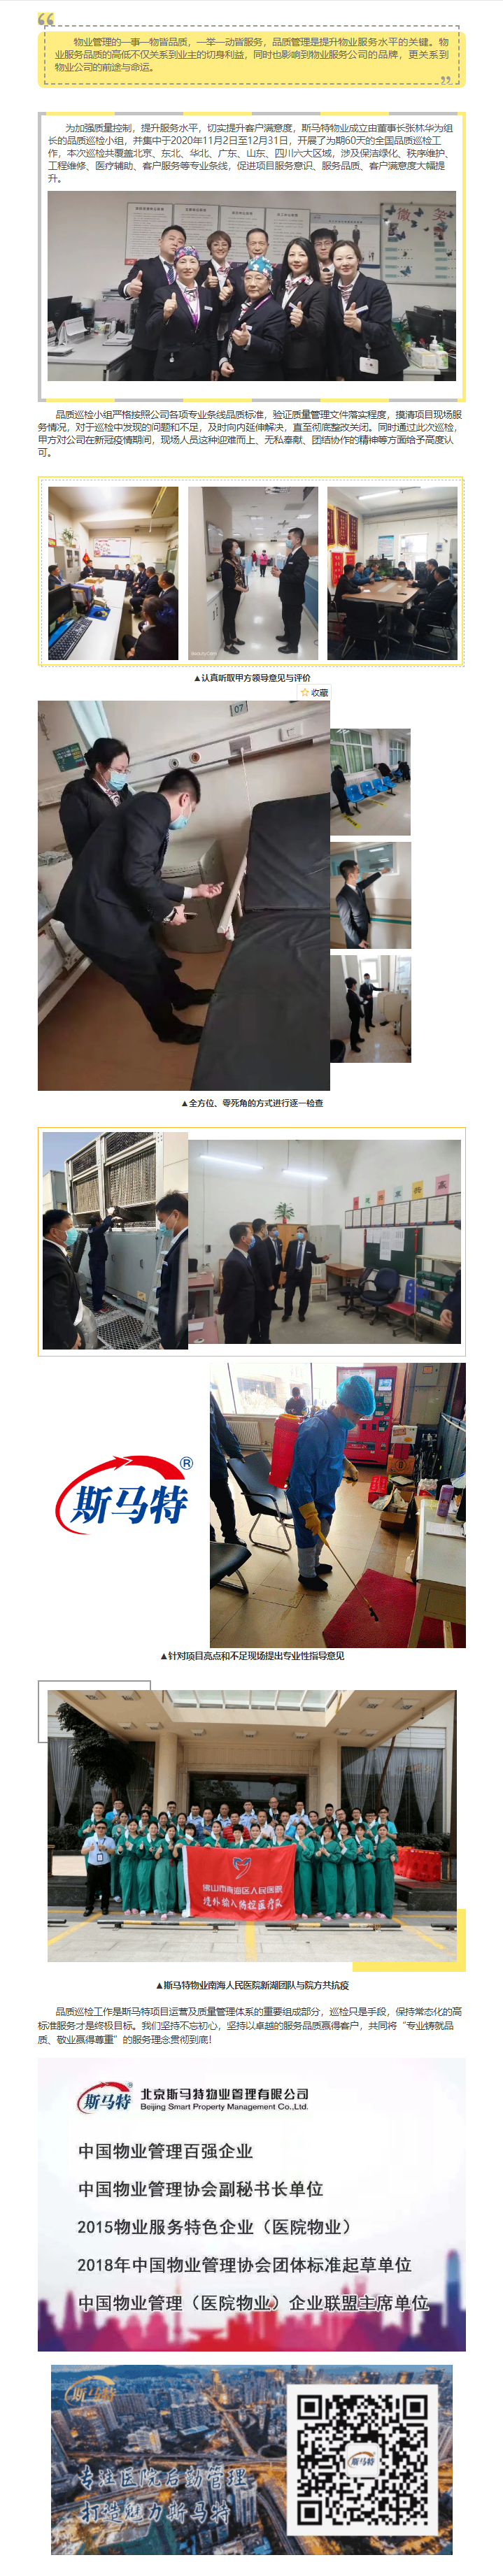 品质为本 用心服务 — 北京斯马特物业圆满完成2020年度全国品质巡检工作